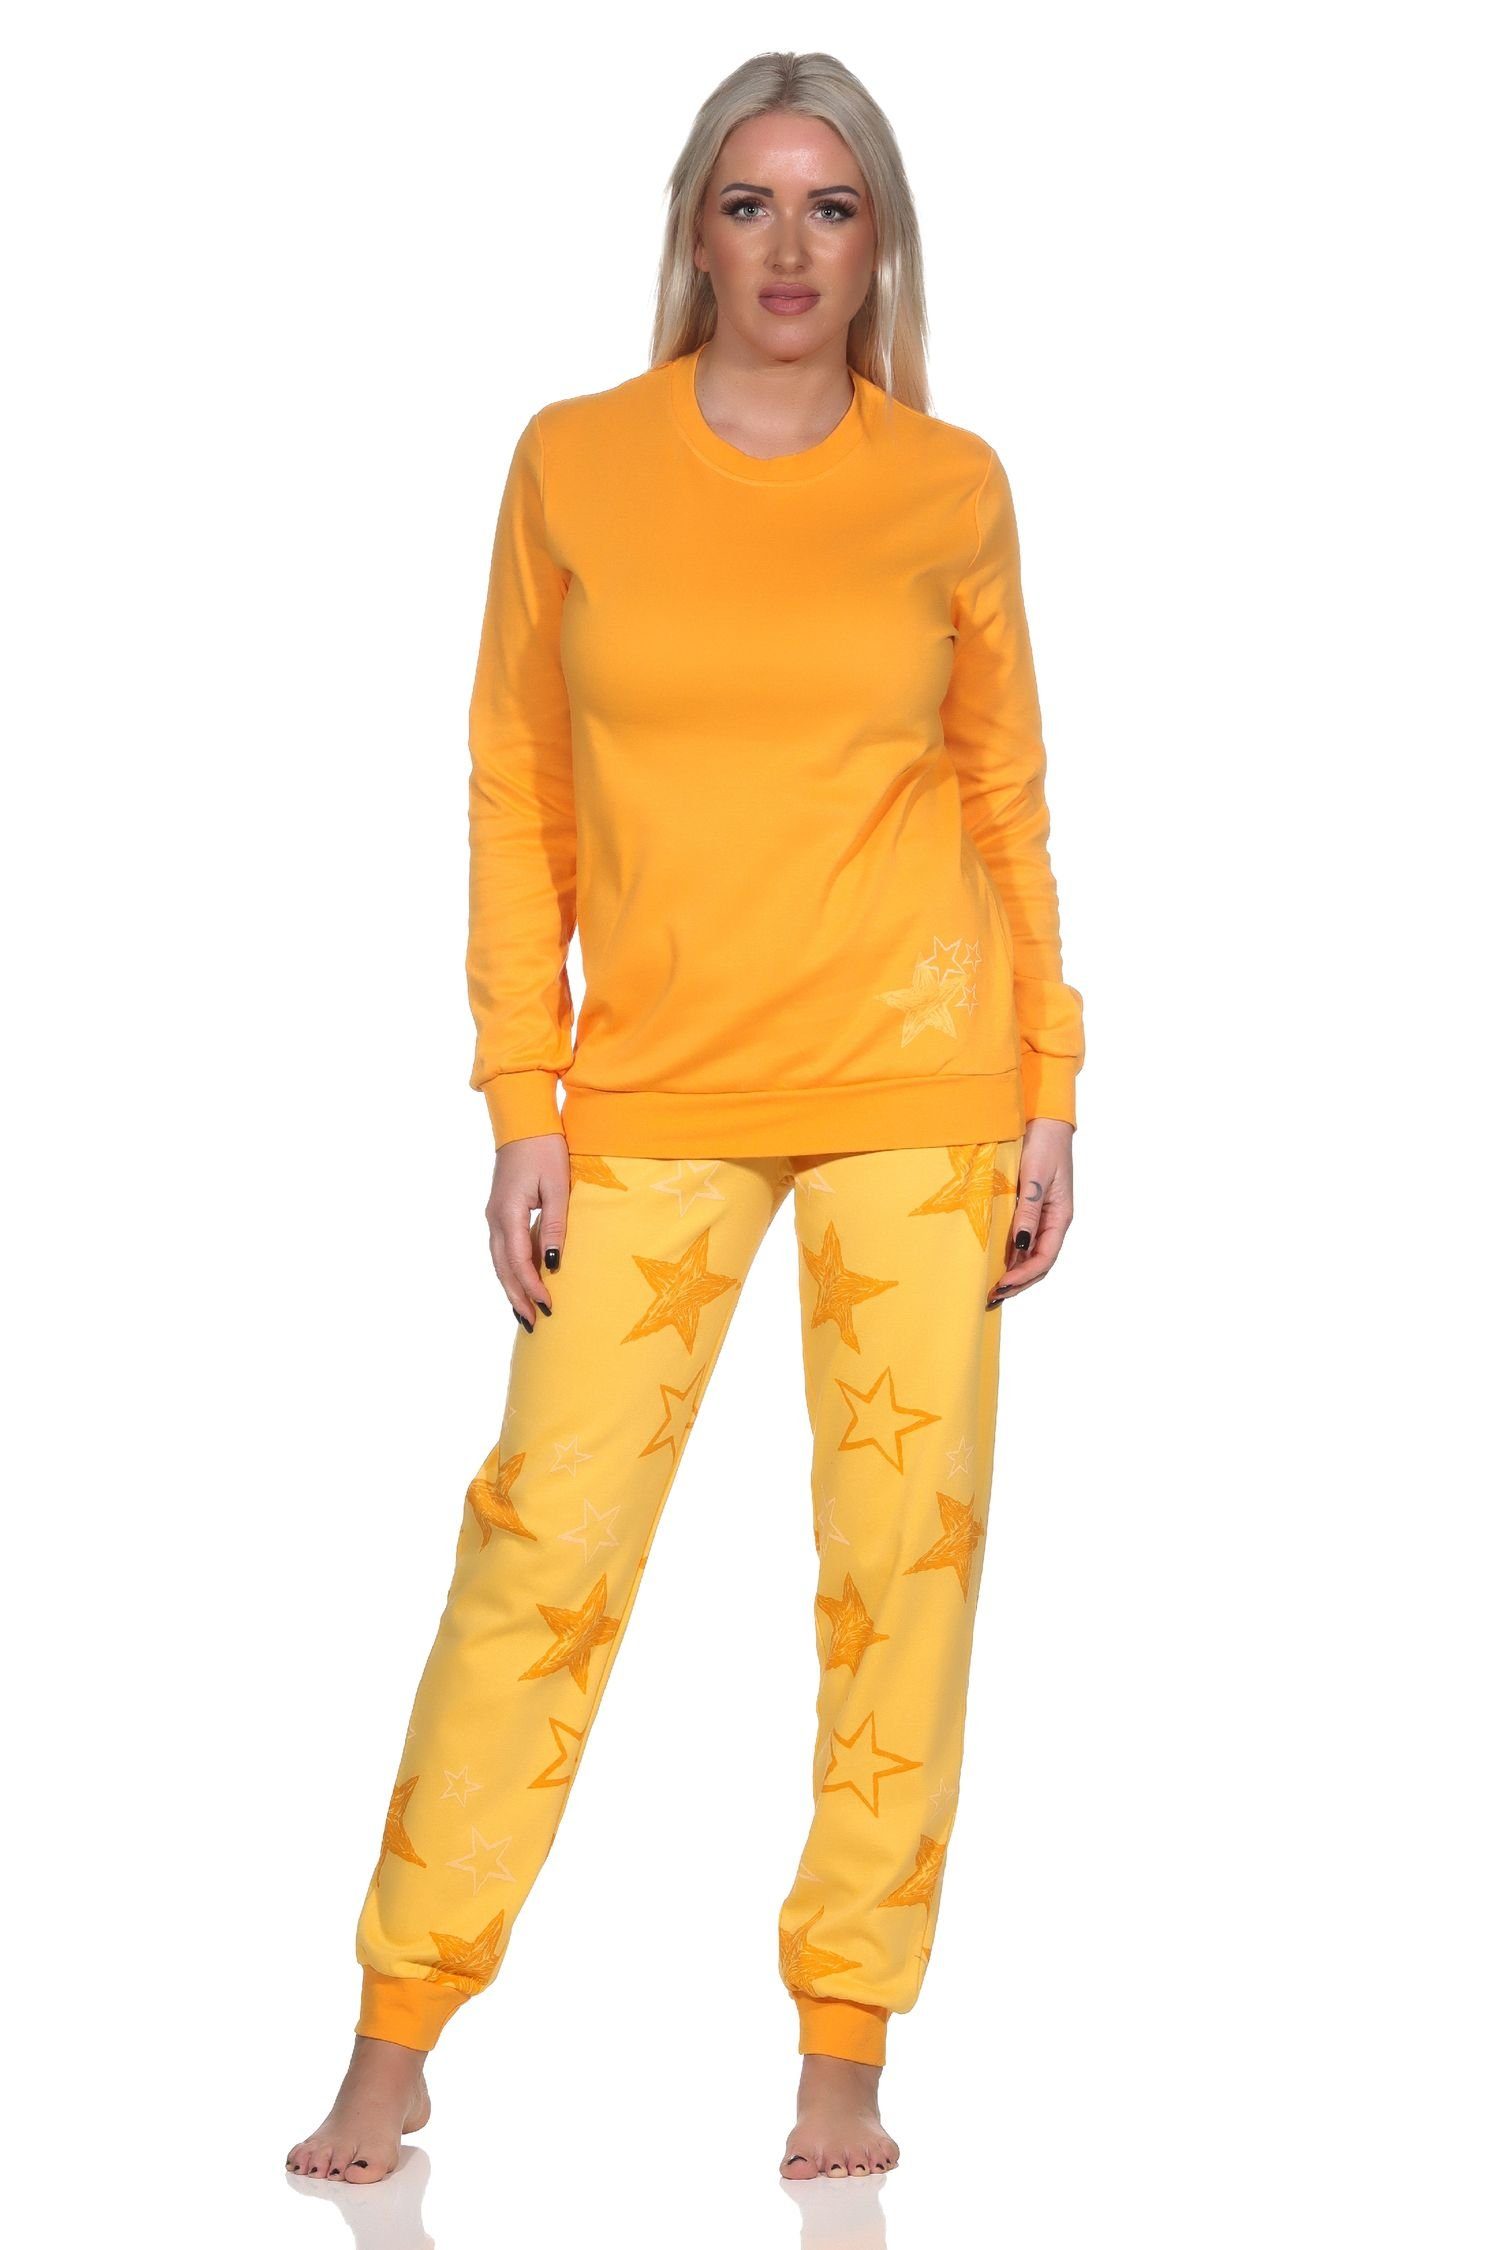 Normann Pyjama Normann Damen Schlafanzug in Kuschel Interlock Qualität Sterne Optik orange